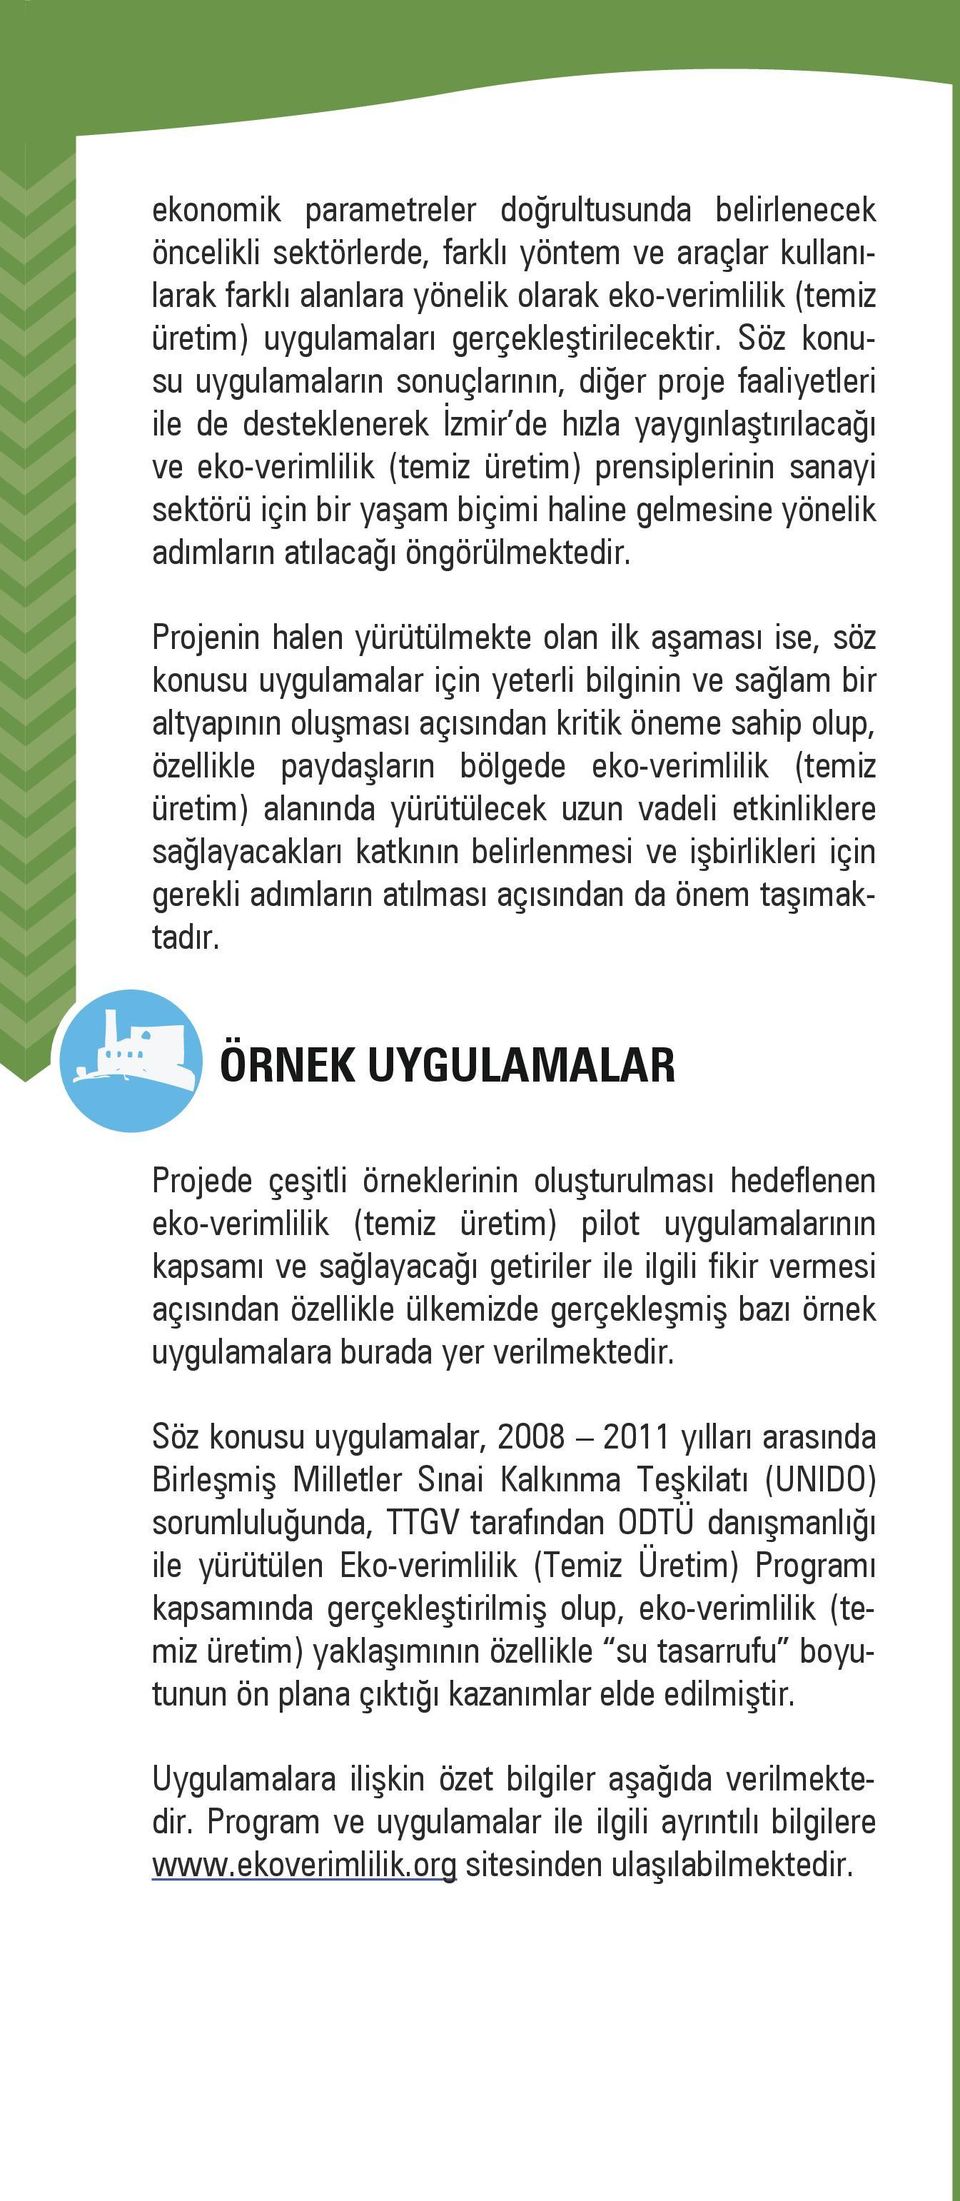 Söz konusu uygulamaların sonuçlarının, diğer proje faaliyetleri ile de desteklenerek İzmir de hızla yaygınlaştırılacağı ve eko-verimlilik (temiz üretim) prensiplerinin sanayi sektörü için bir yaşam